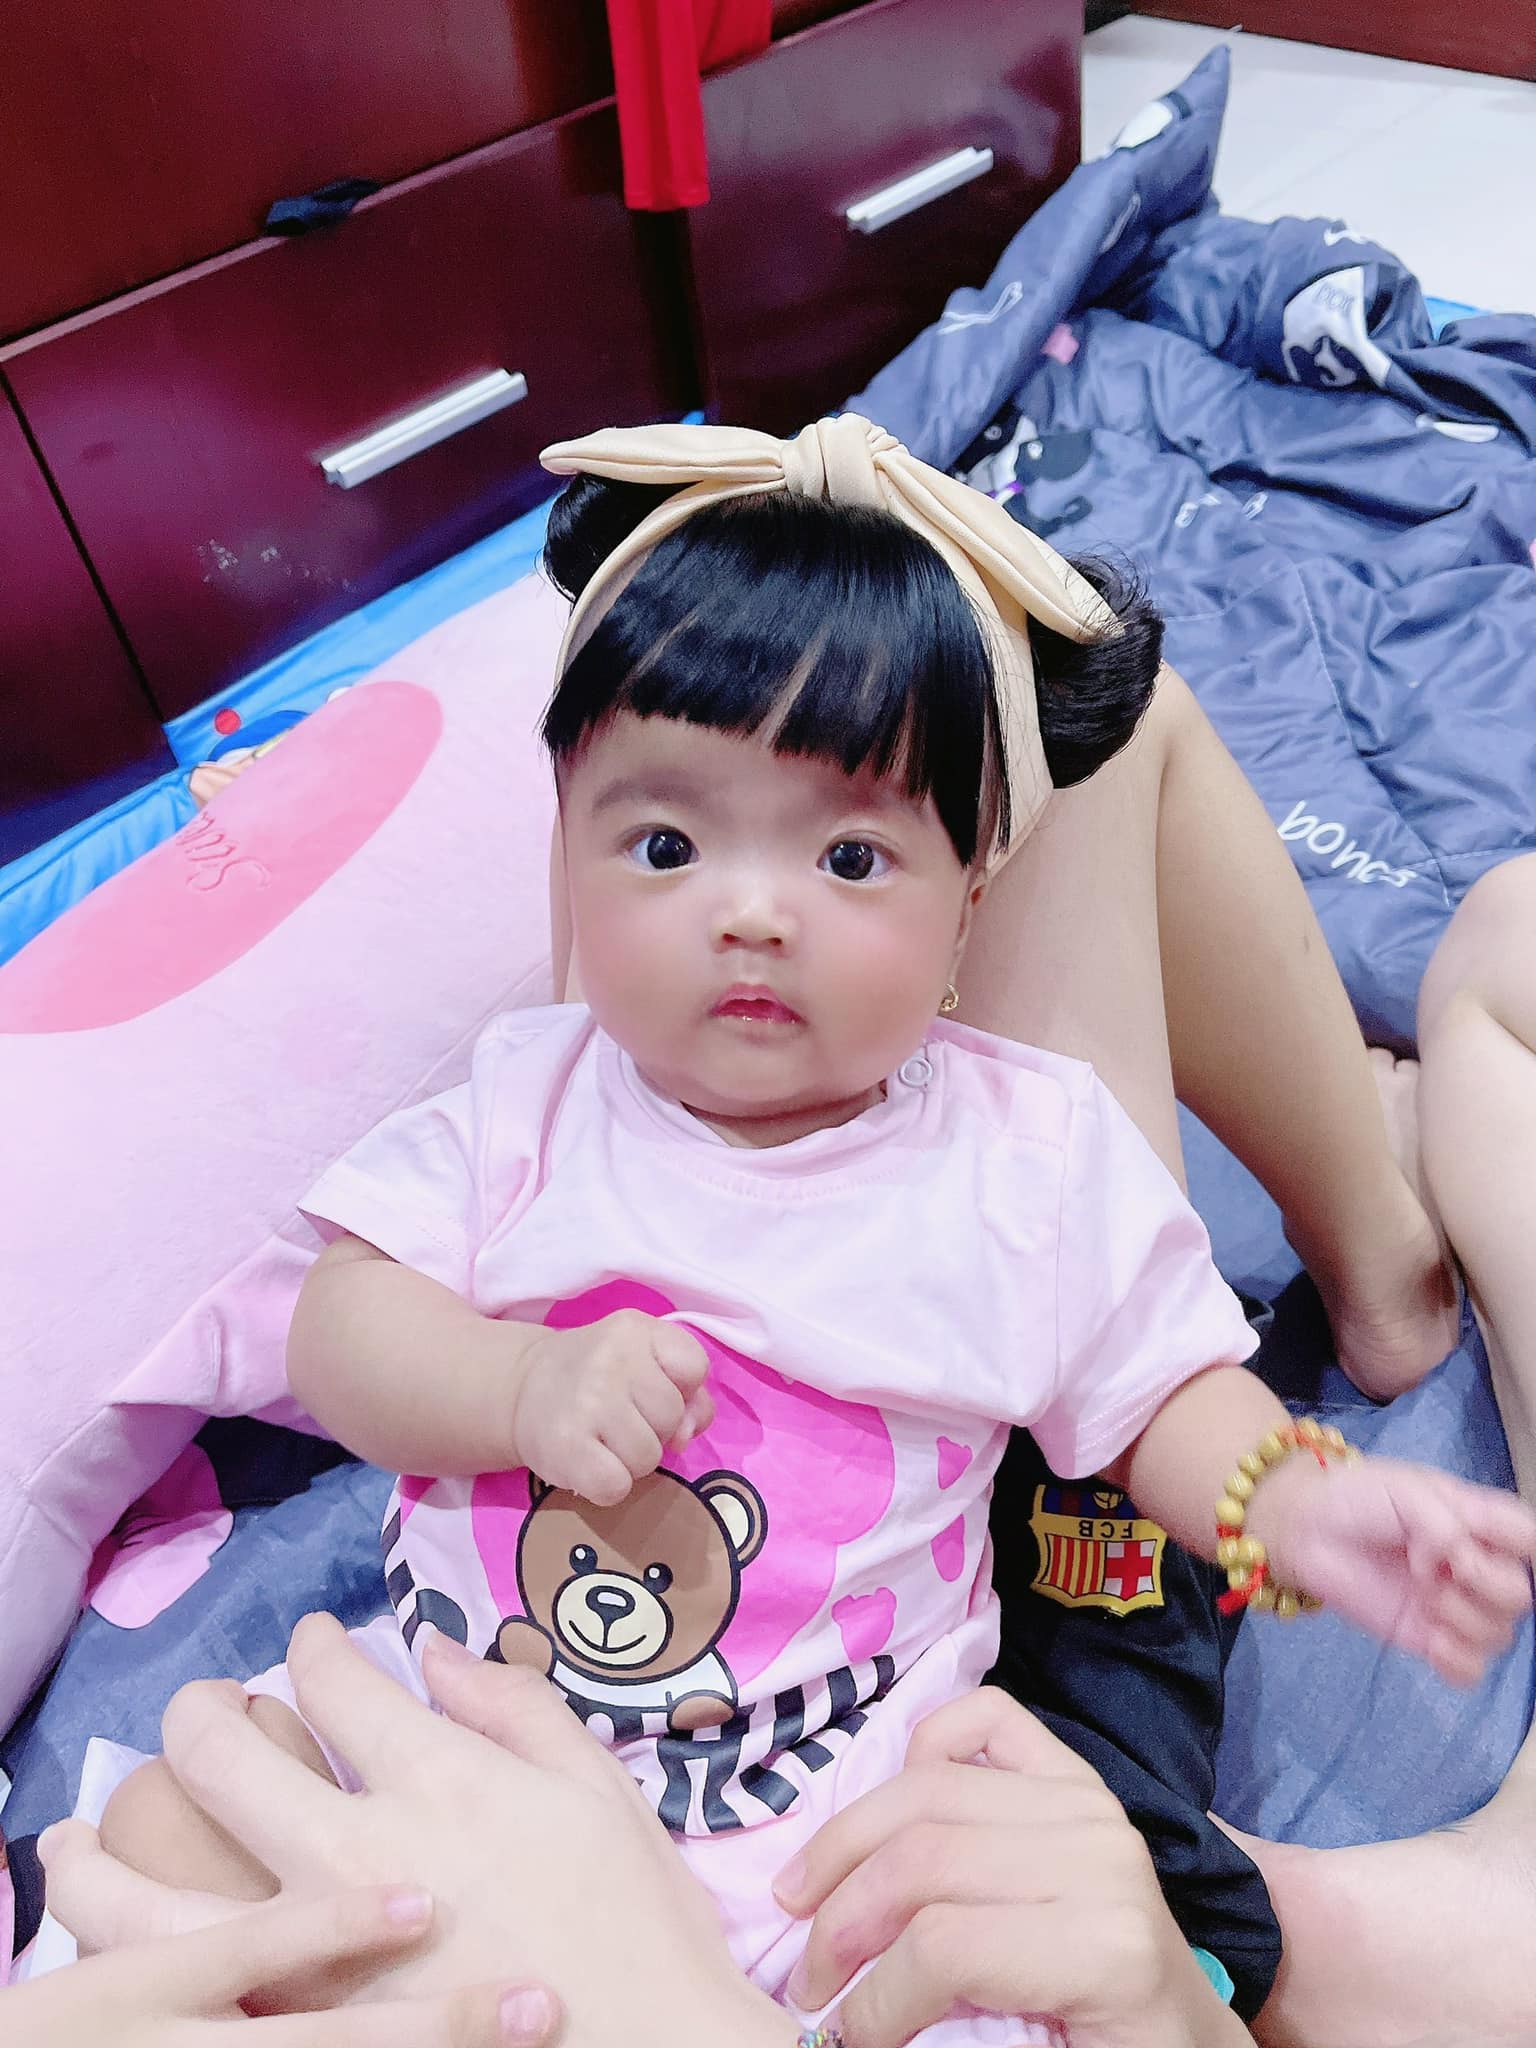 Mạc Văn Khoa khoe ảnh gia đình hạnh phúc, netizen xỉu up xỉu down với gương mặt tấu hài của cô con gái - Ảnh 5.